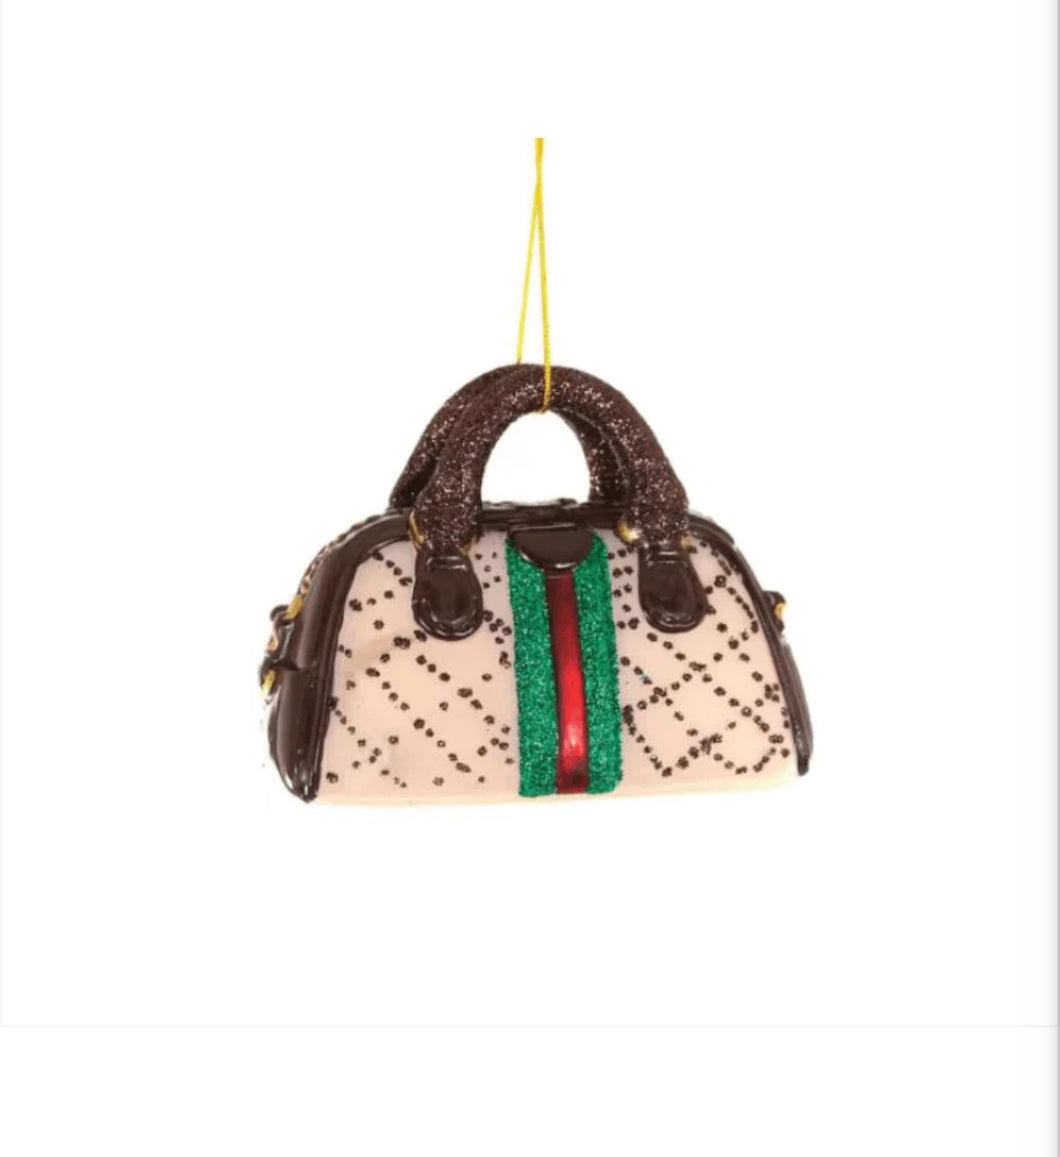 Designer Handbag Christmas Ornament